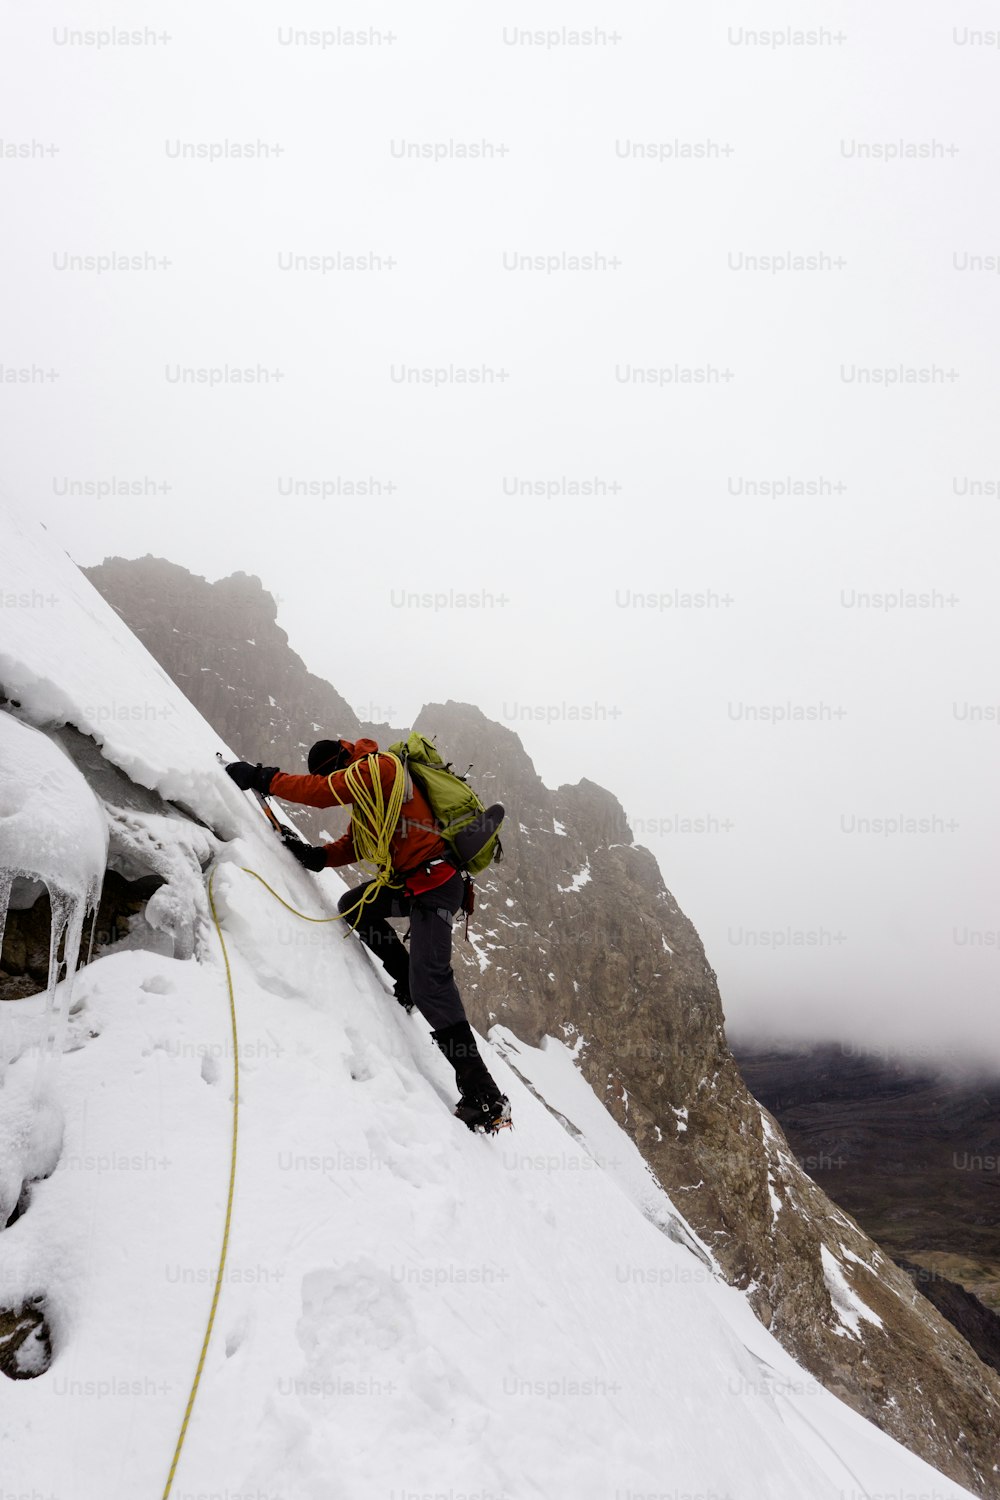 Alpinista masculino em uma jaqueta vermelha escalando uma geleira íngreme e perigosa na Cordilheira Branca nos Andes no Peru